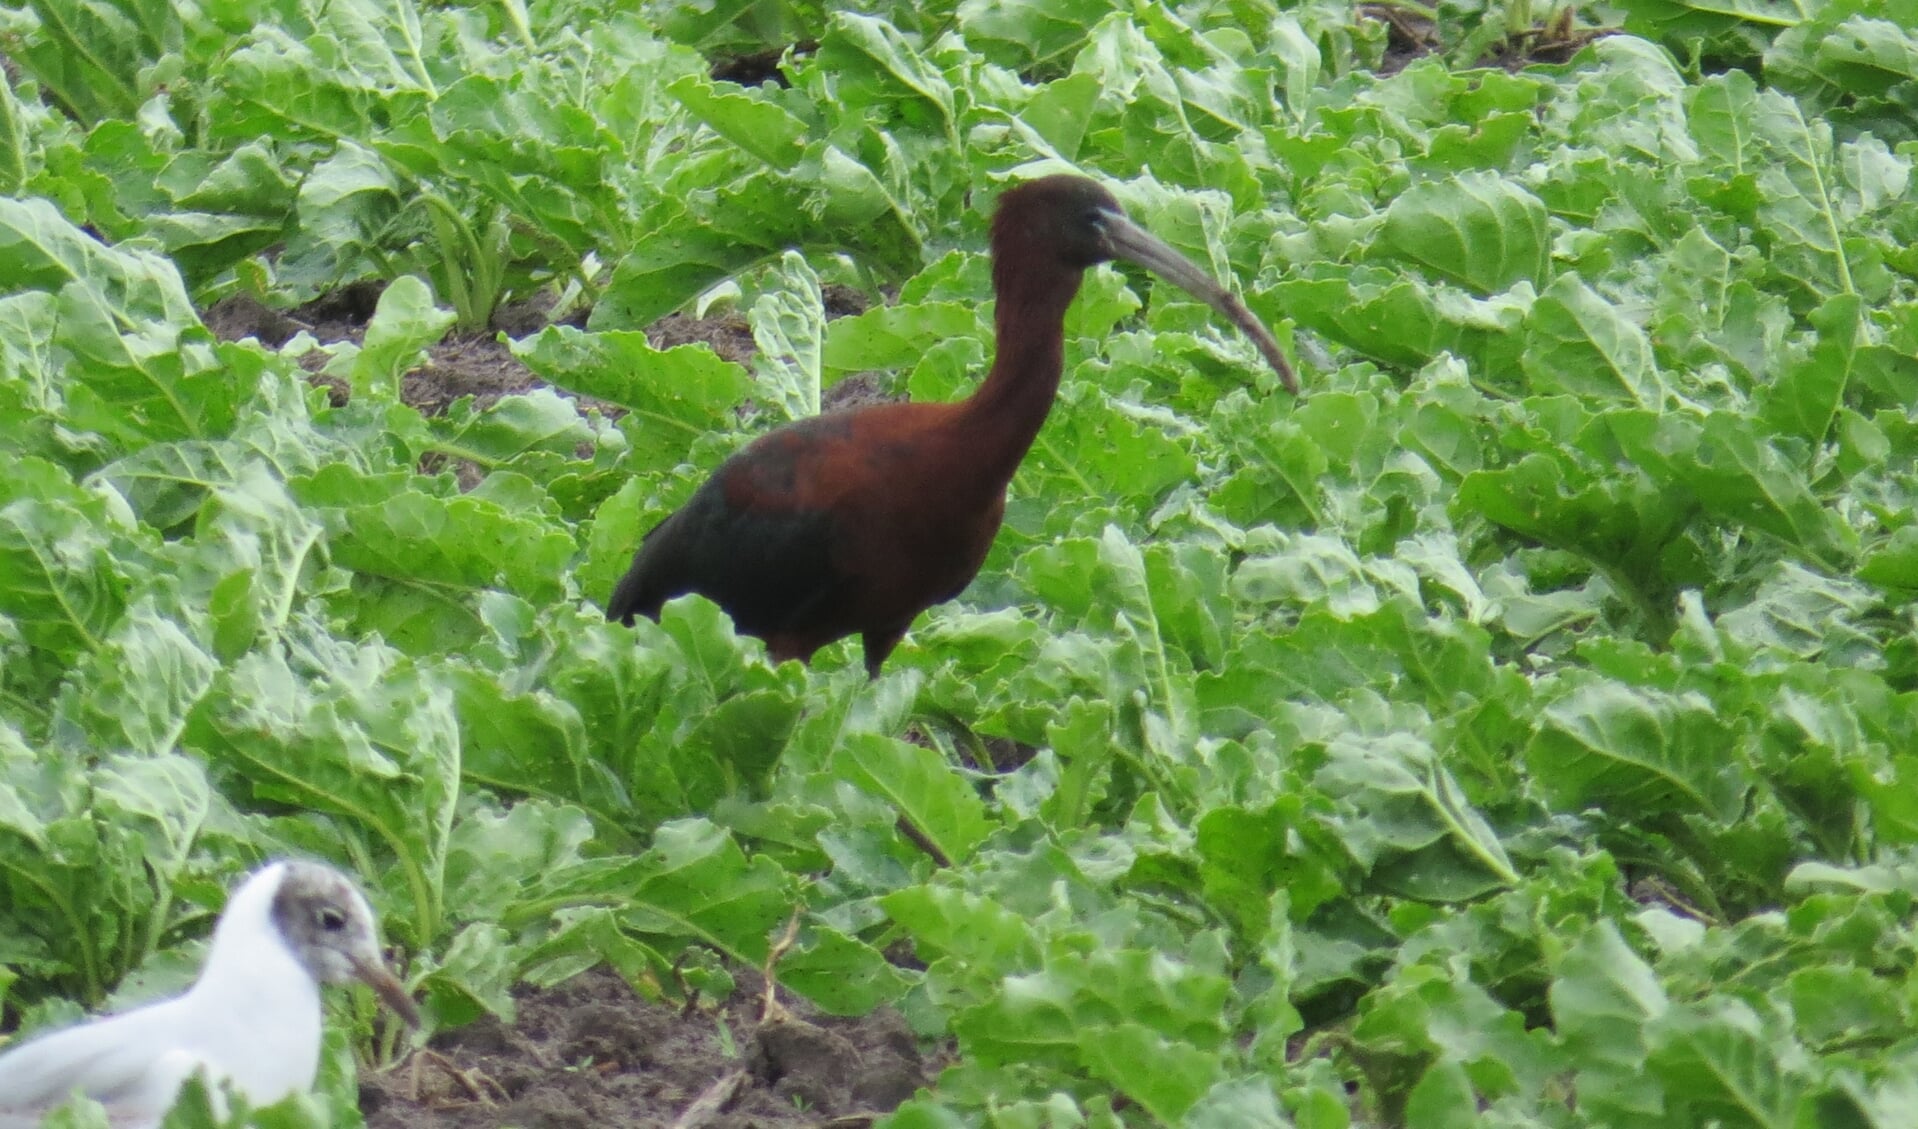 De zwarte ibis tussen de bieten op het land van Lap.